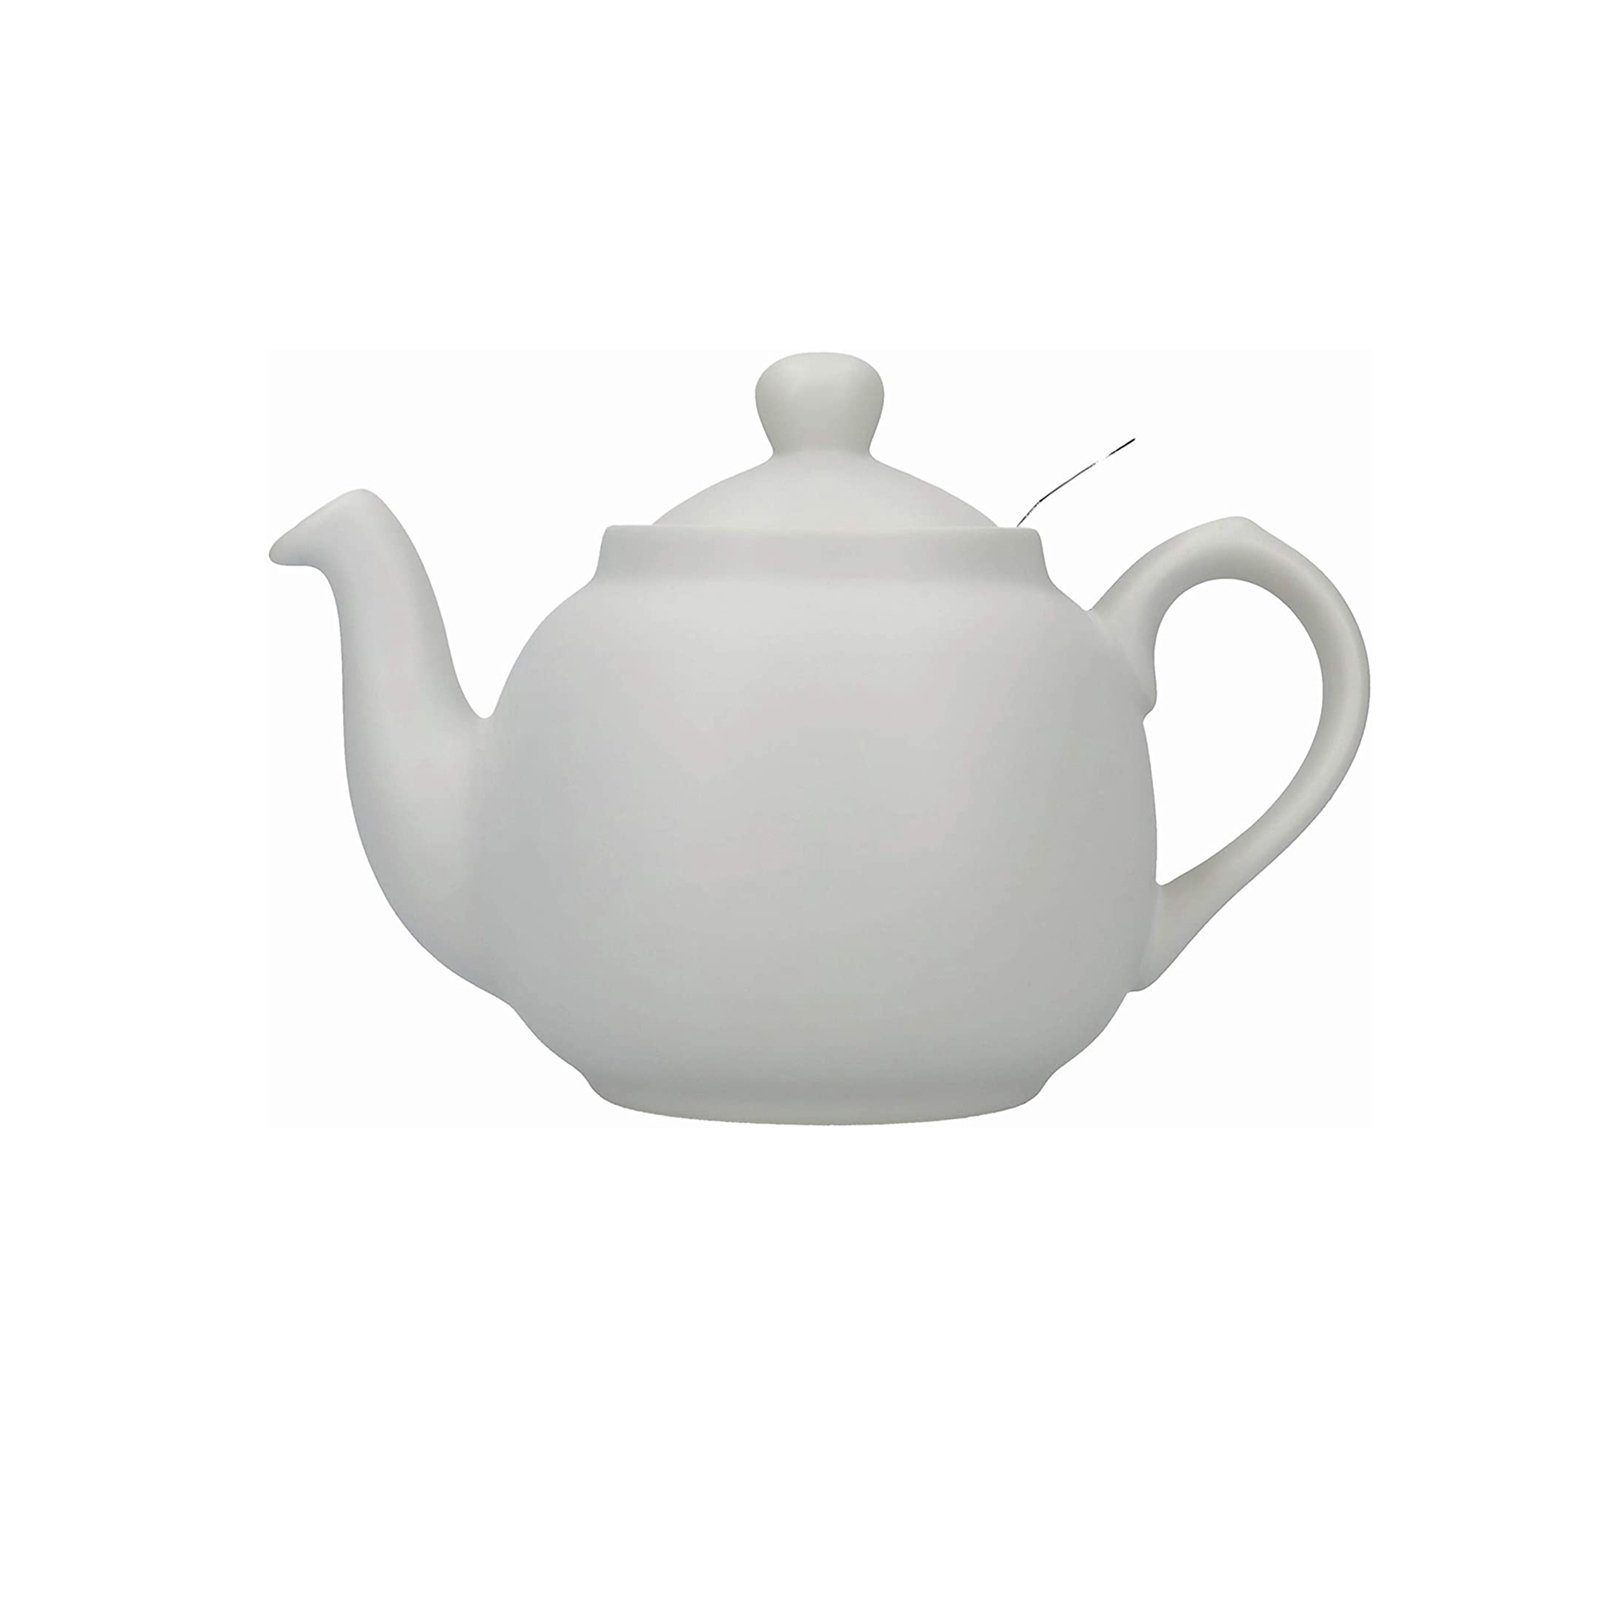 Neuetischkultur Teekanne Teekanne 2 Tassen, Grau l Keramik, für Nordisch 0.6